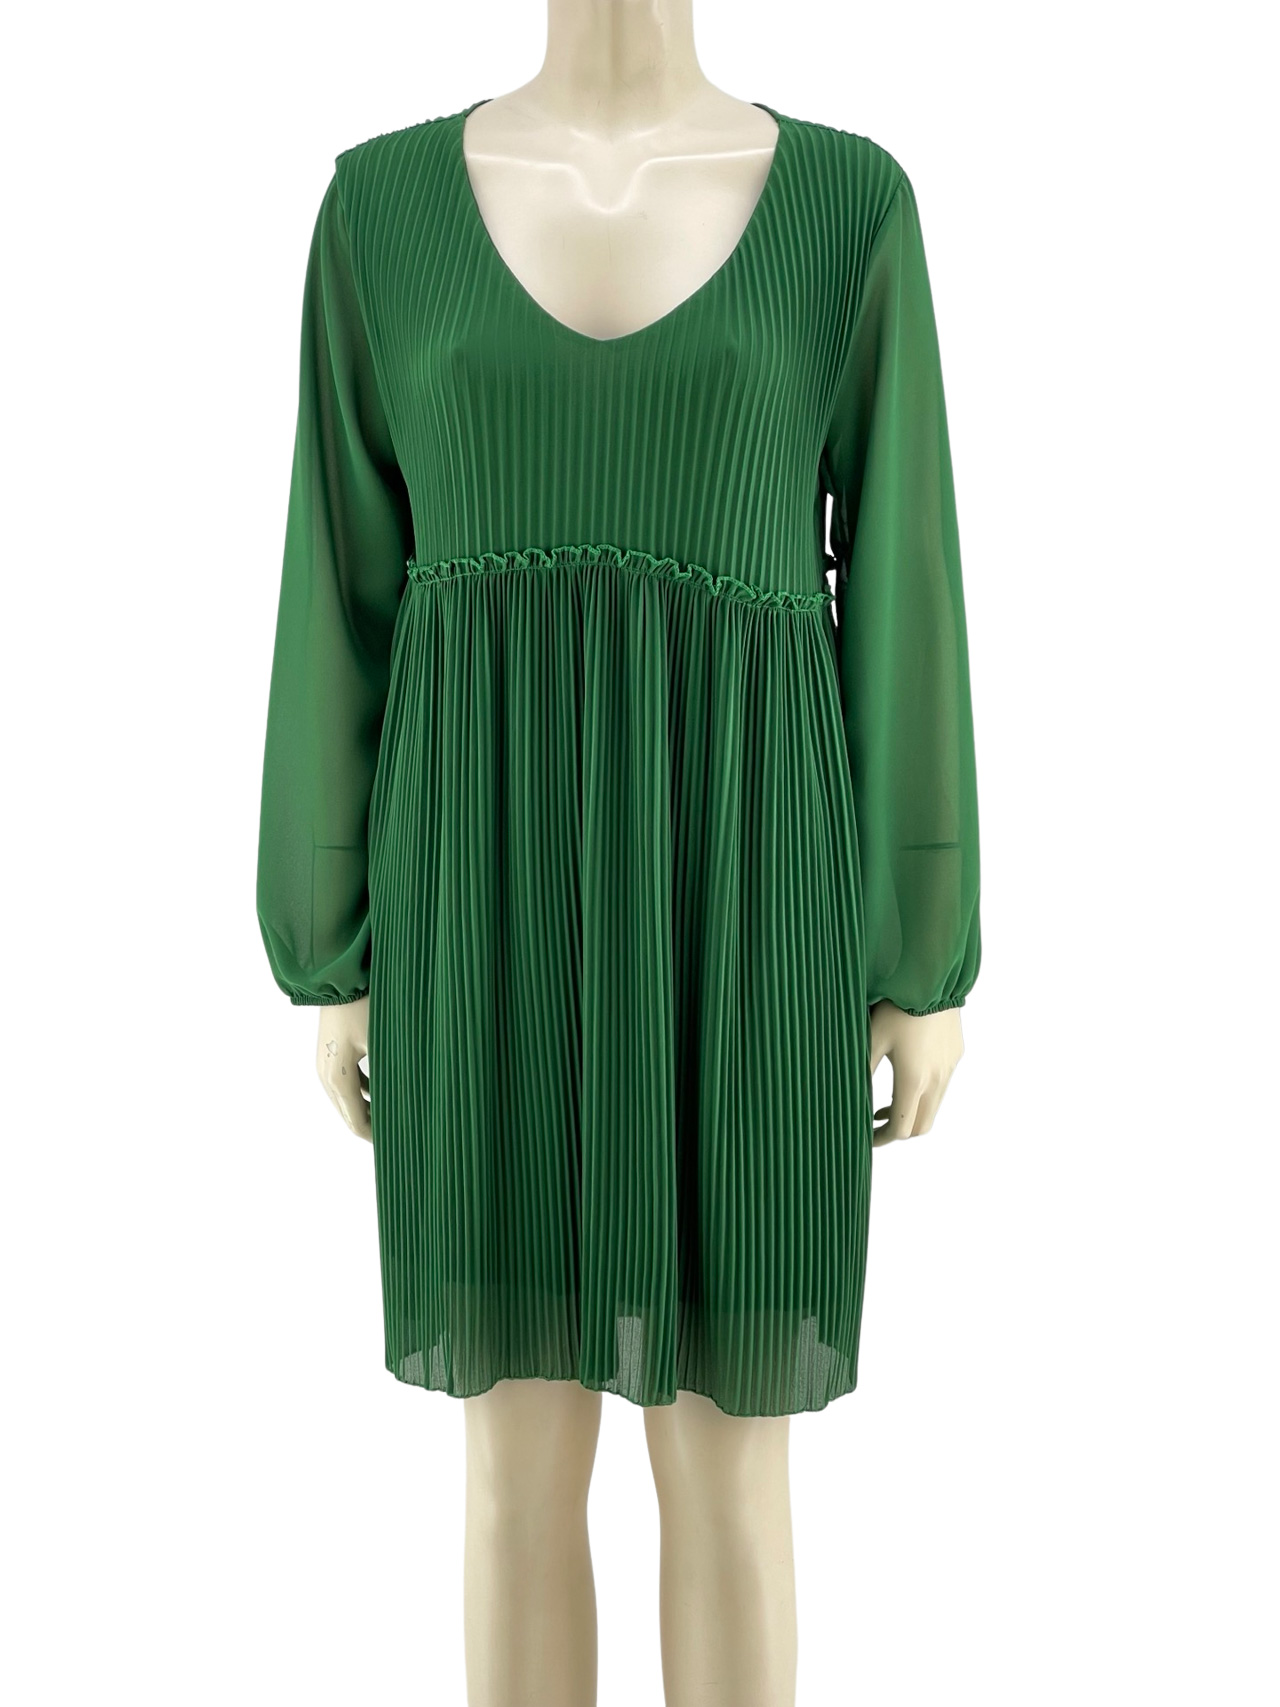 Φόρεμα V μονόχρωμο πλισέ κωδ. 10107 μπροστινή όψη- πράσινο